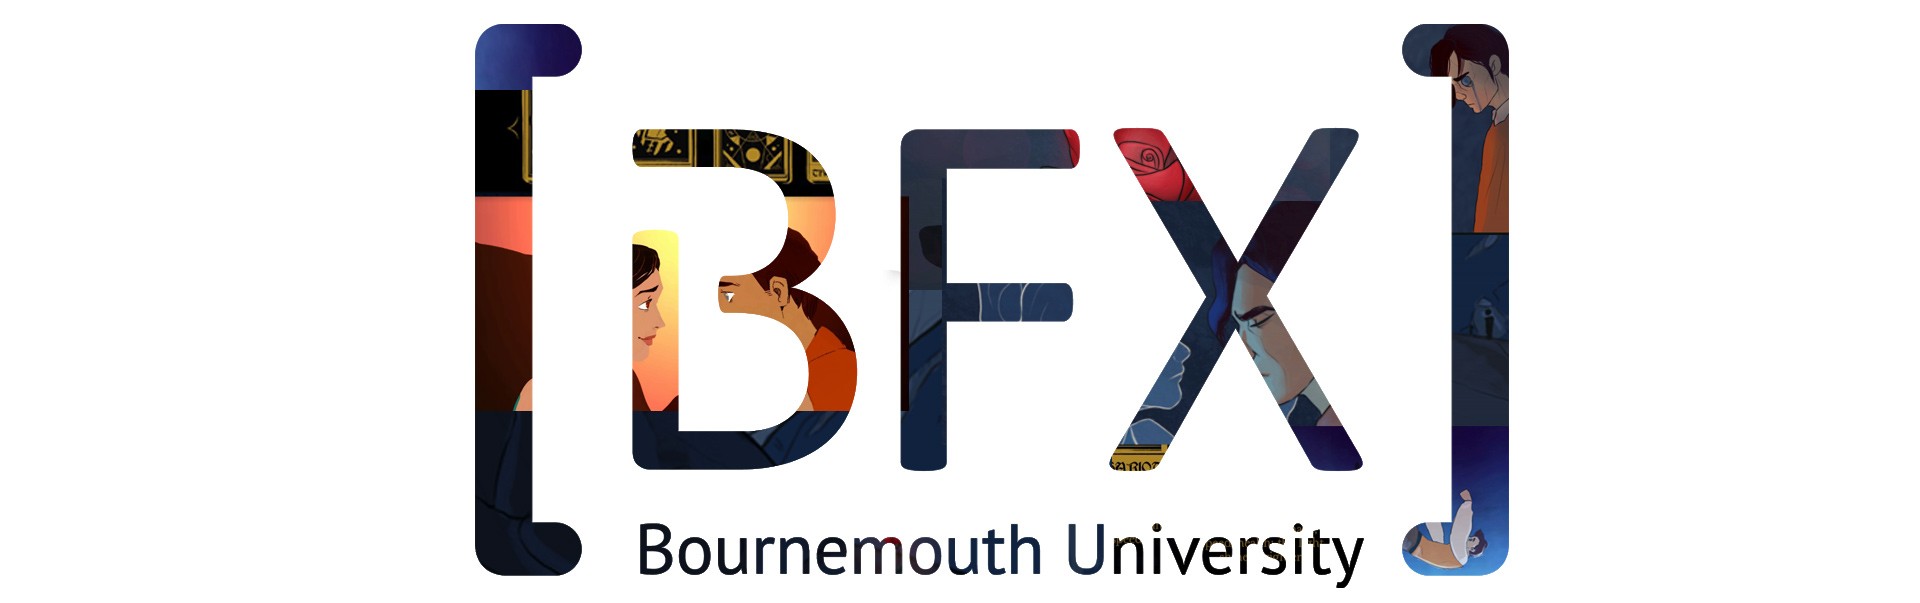 BFX 2021 Programme Round-Up